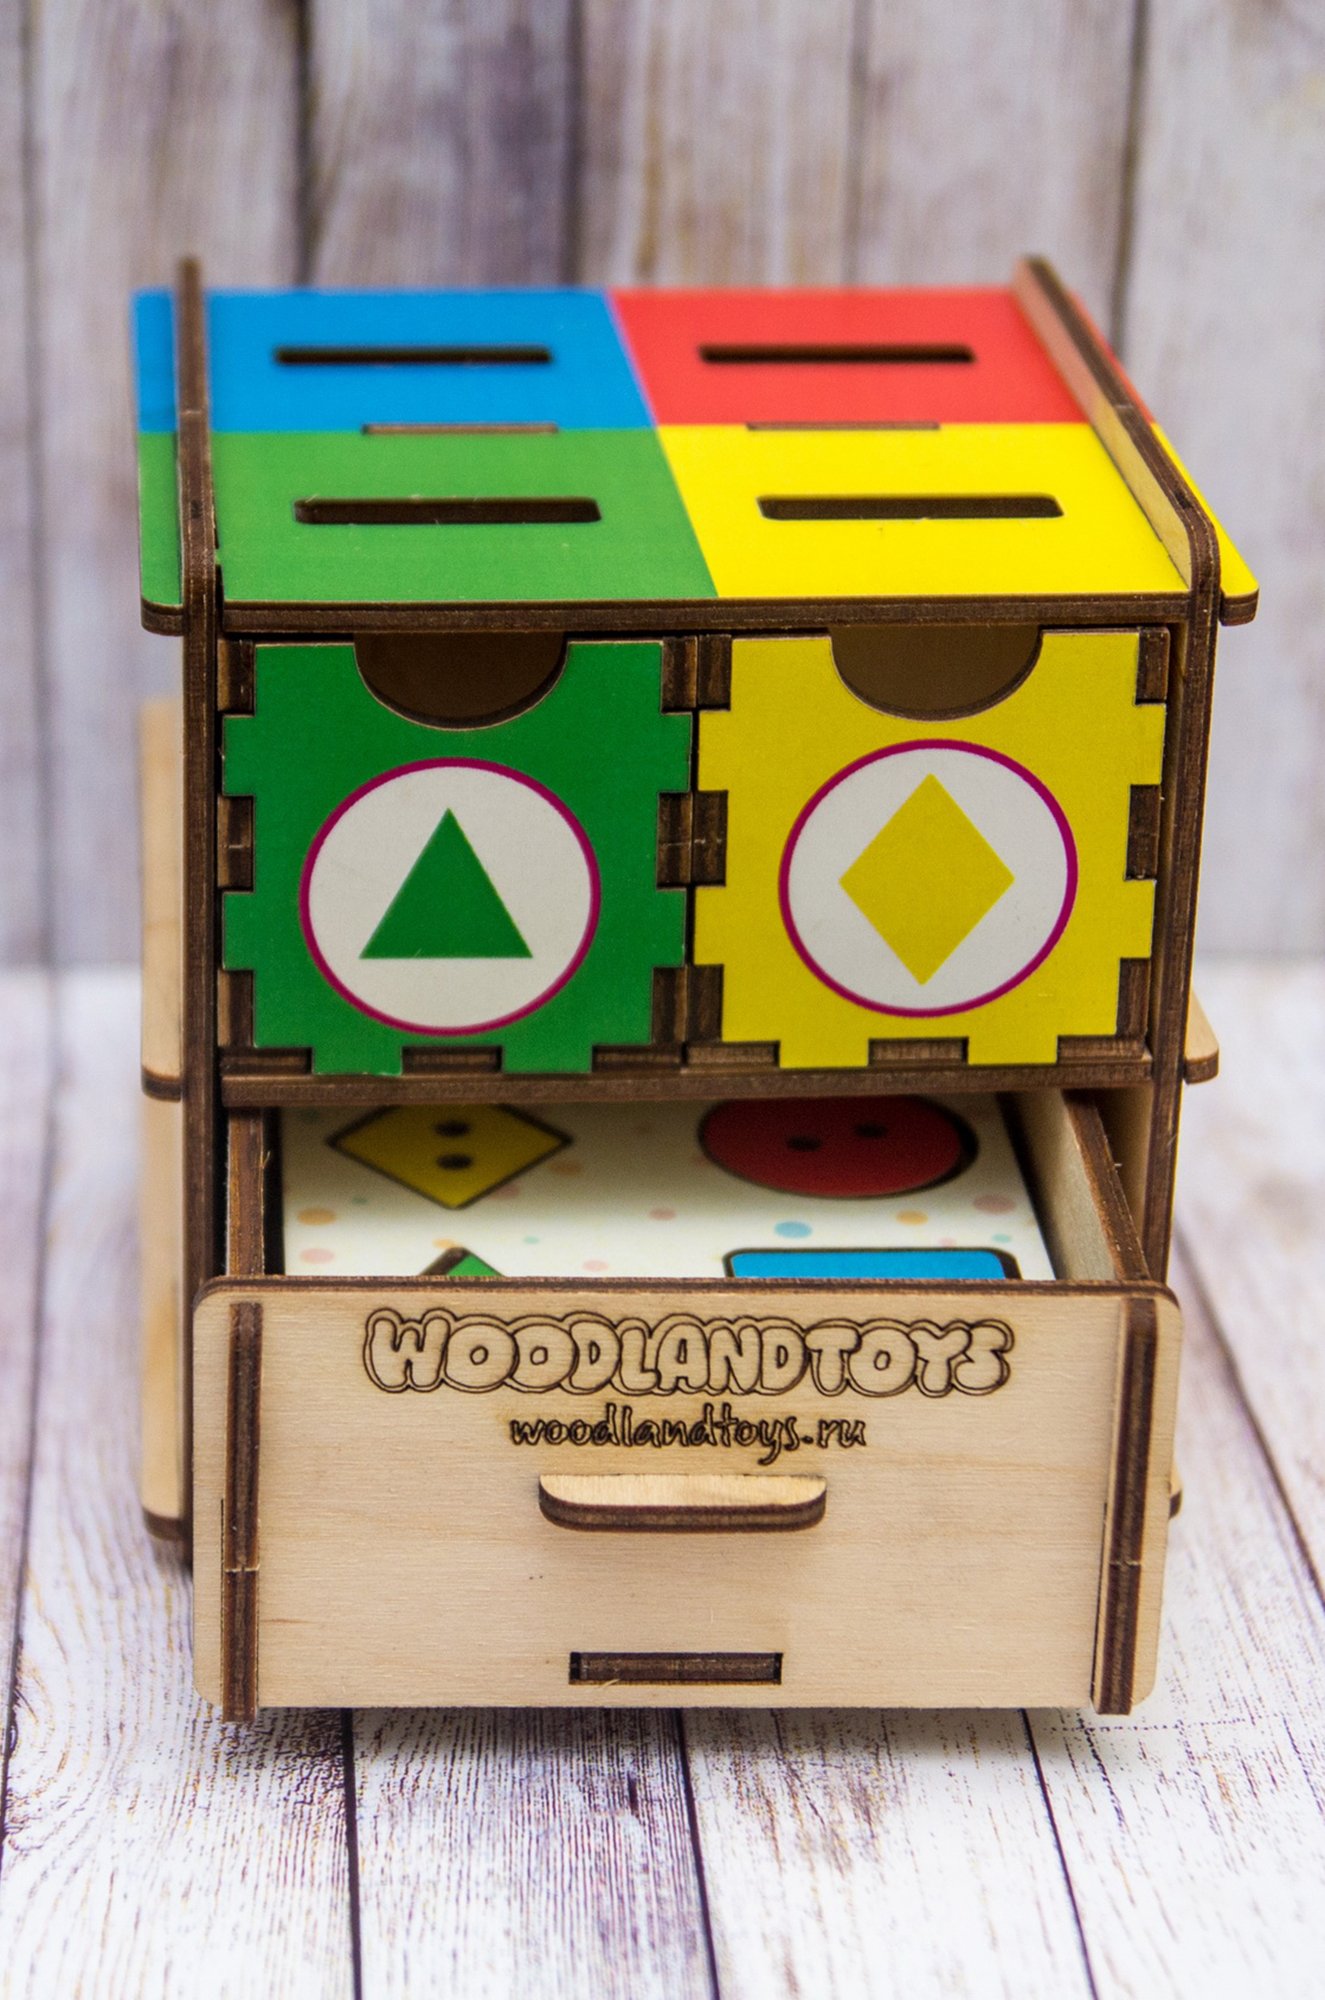 Комодик-куб Woodlandtoys